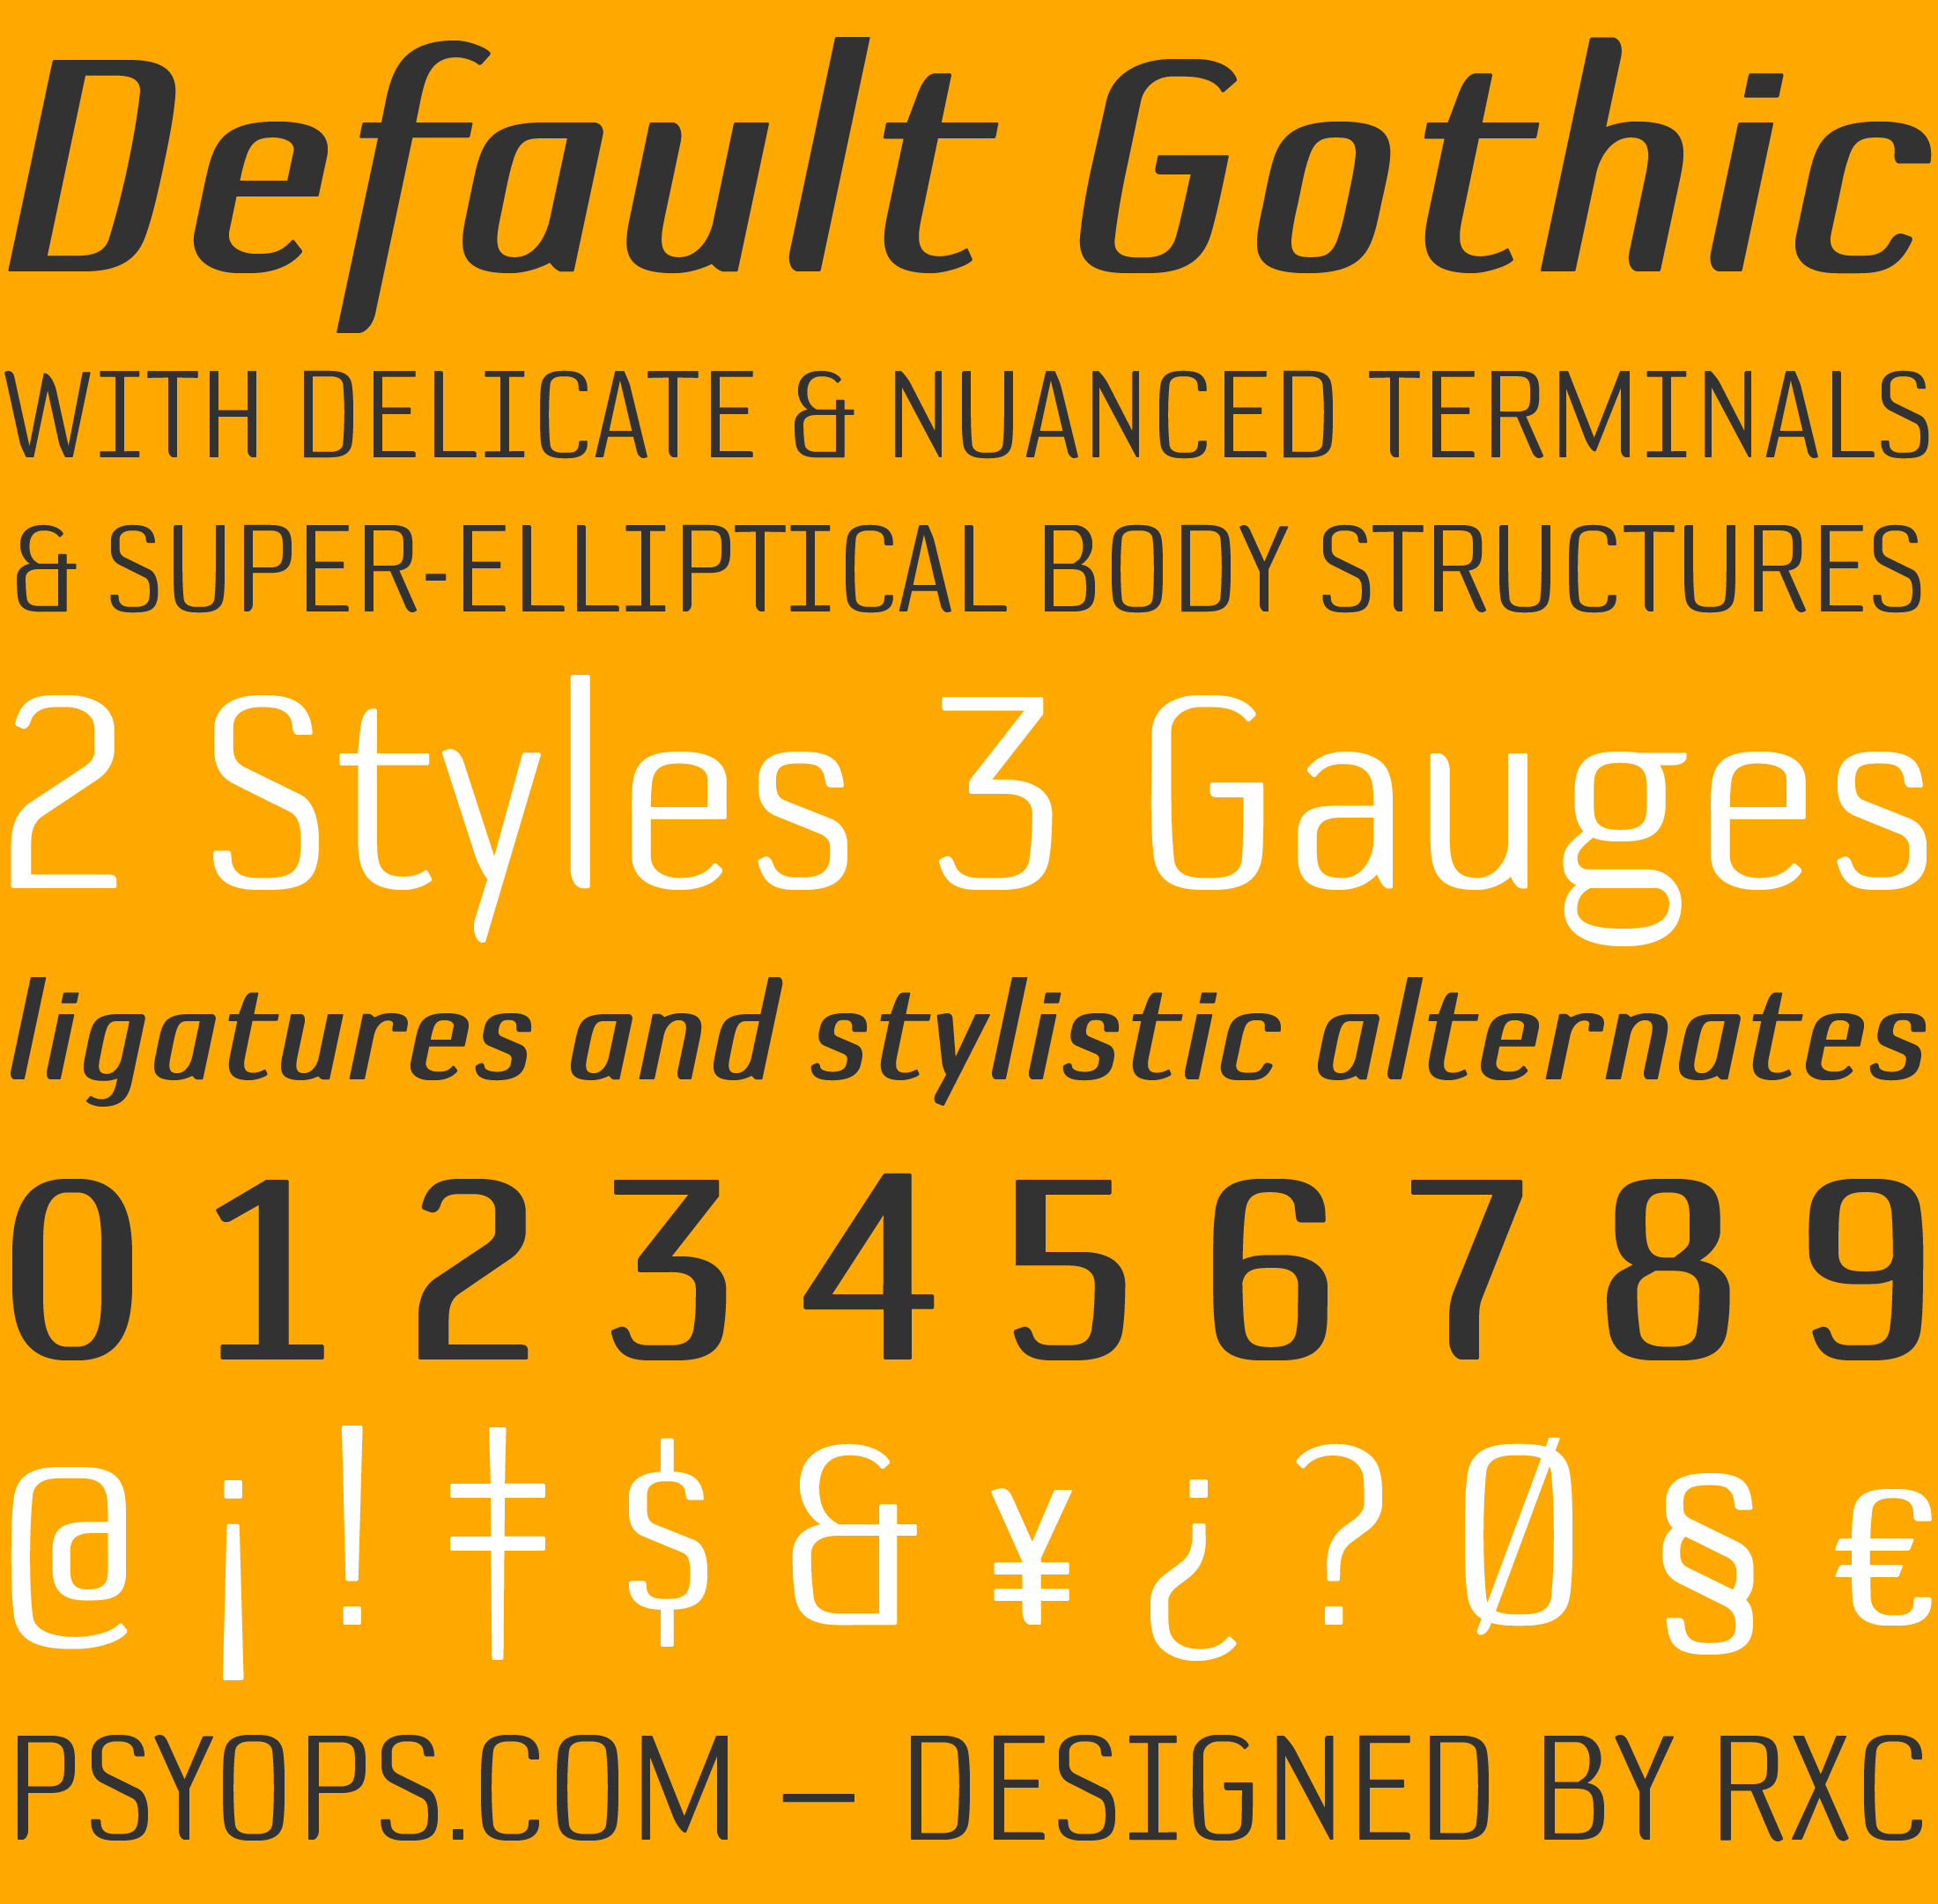 Default Gothic Font Specimen Stacked